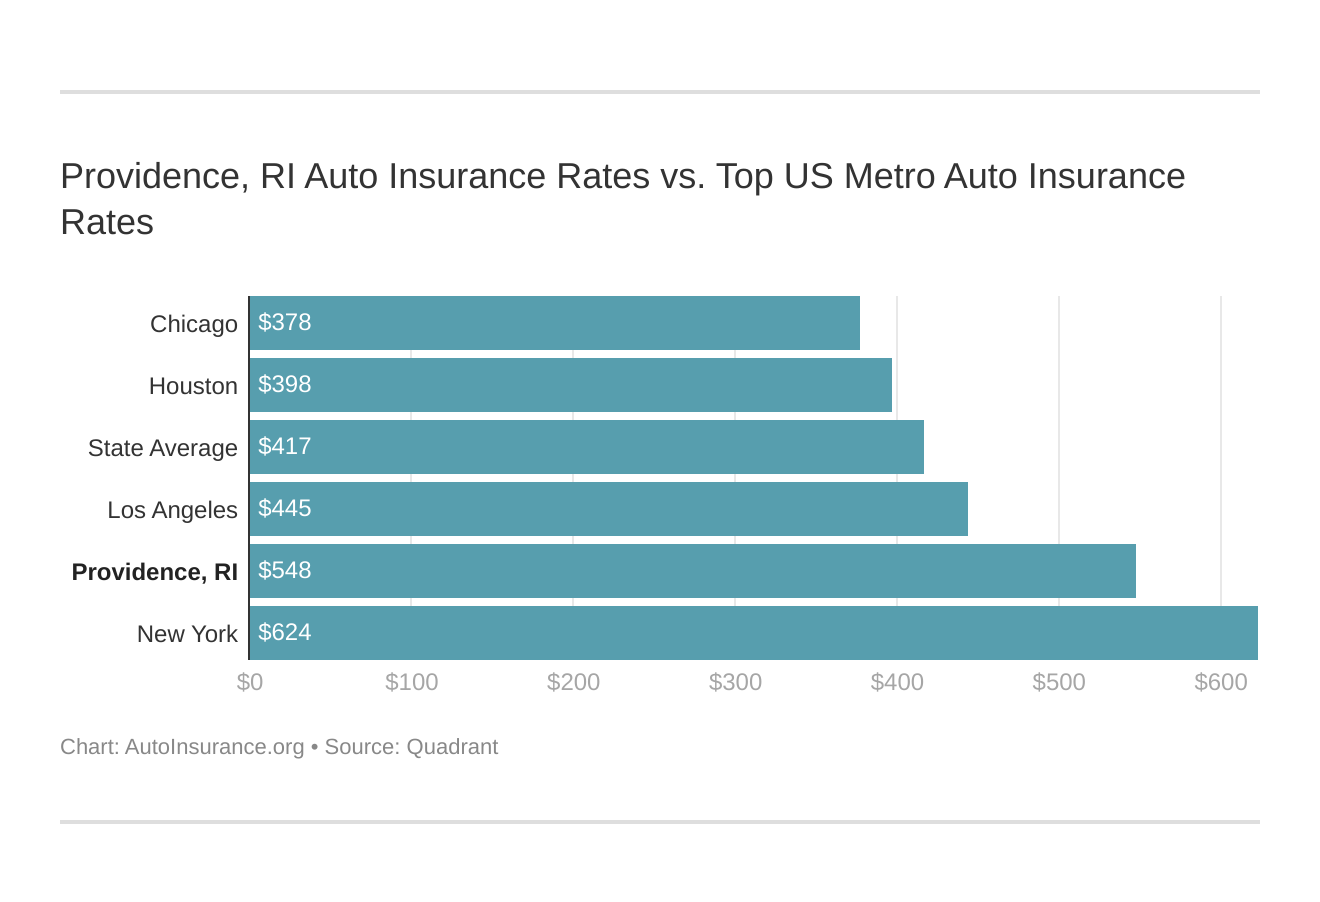 Providence, RI Auto Insurance Rates vs. Top US Metro Auto Insurance Rates